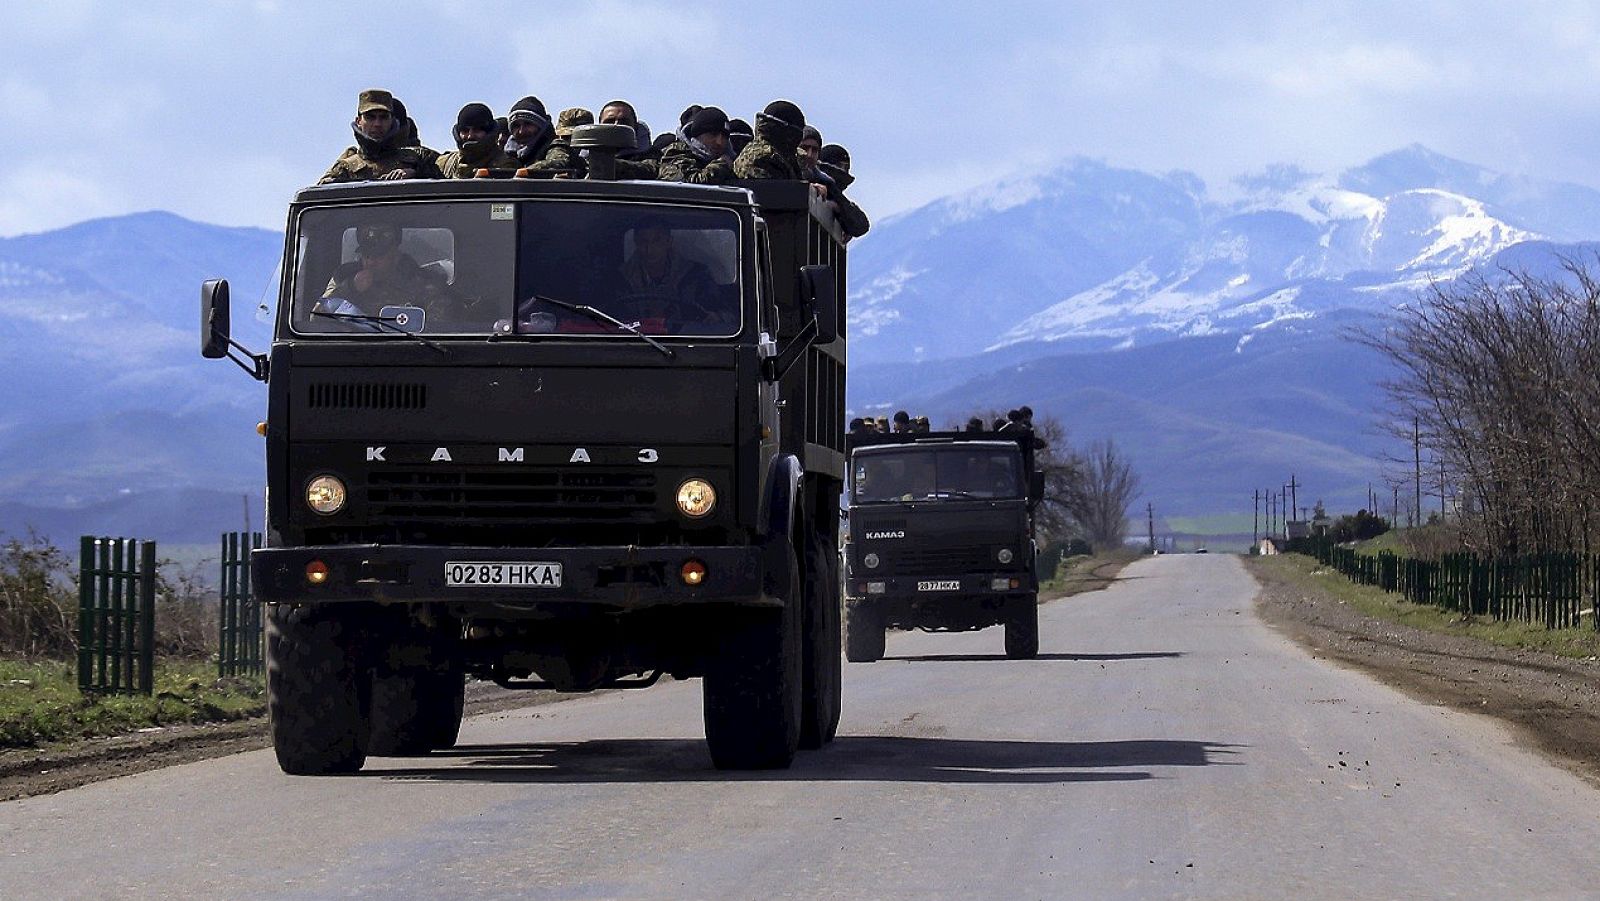 Transporte de voluntarios para sumarse a la milicia de Nagorno Karabak, enclave disputado entre Azerbaiyán y Armenia, el 4 de abril de 2016. REUTERS/Hrayr Badalyan/PAN Photo